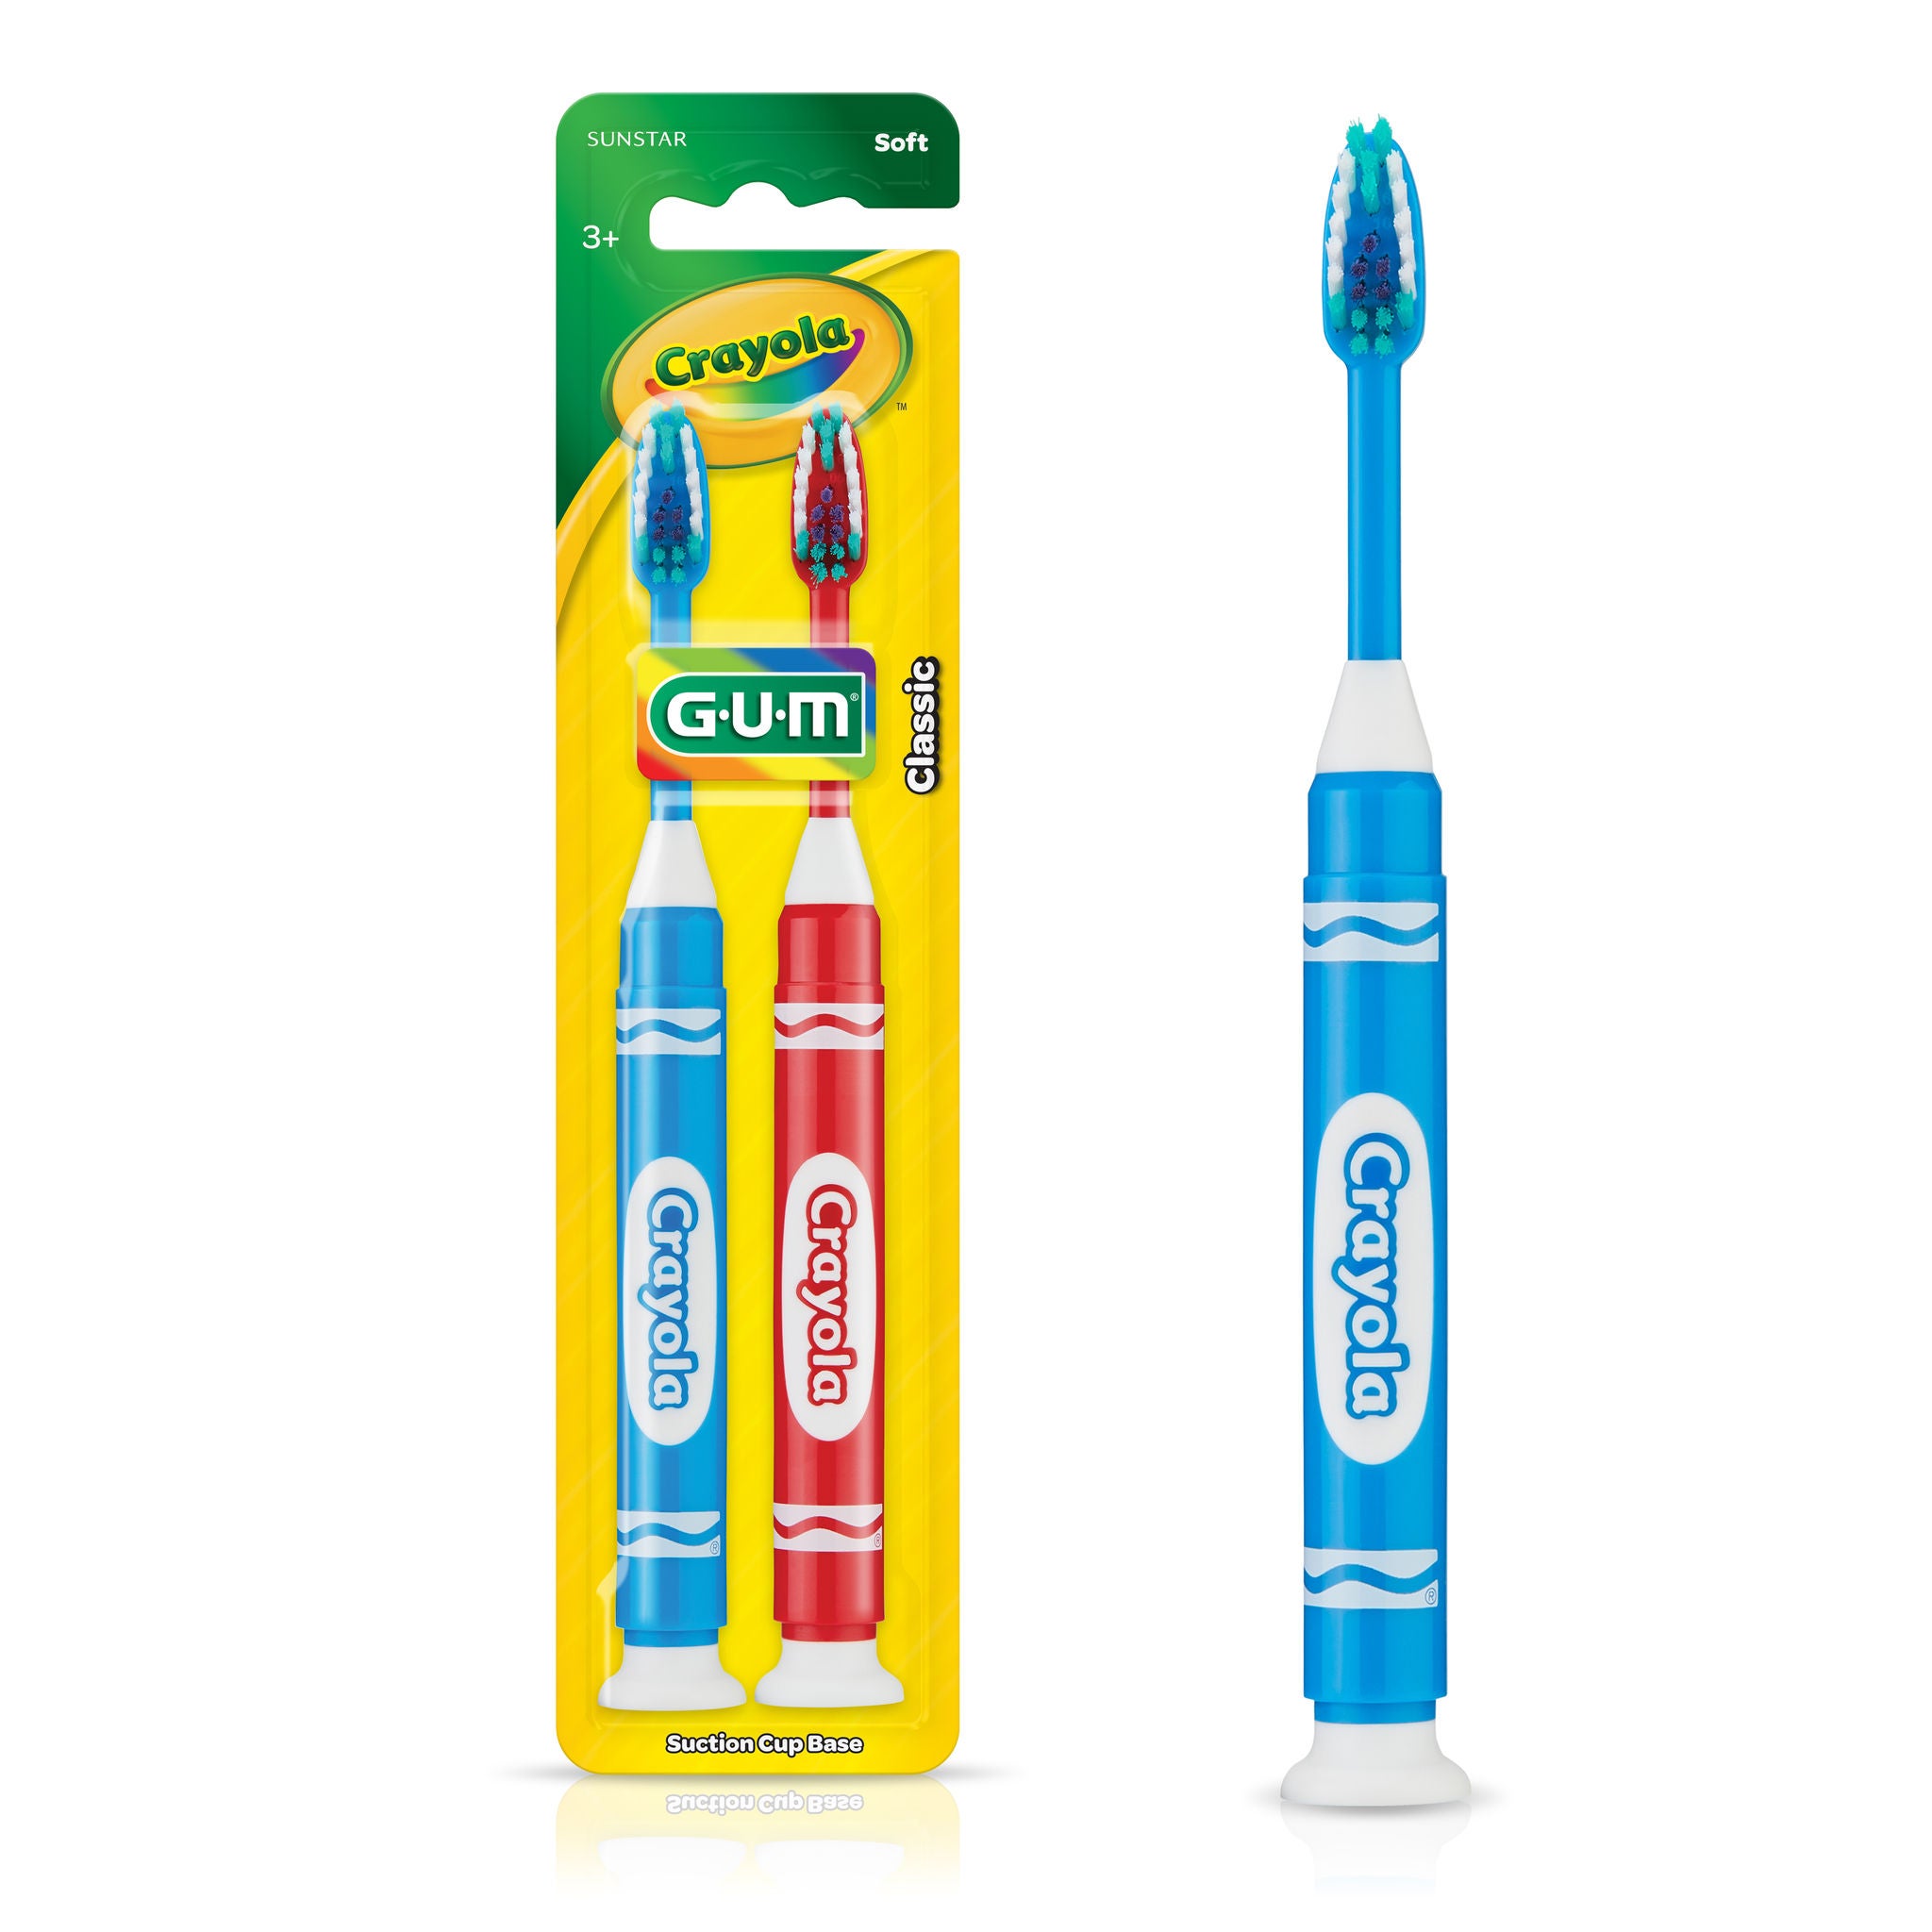 GUM Crayola Kids' Marker Toothbrush